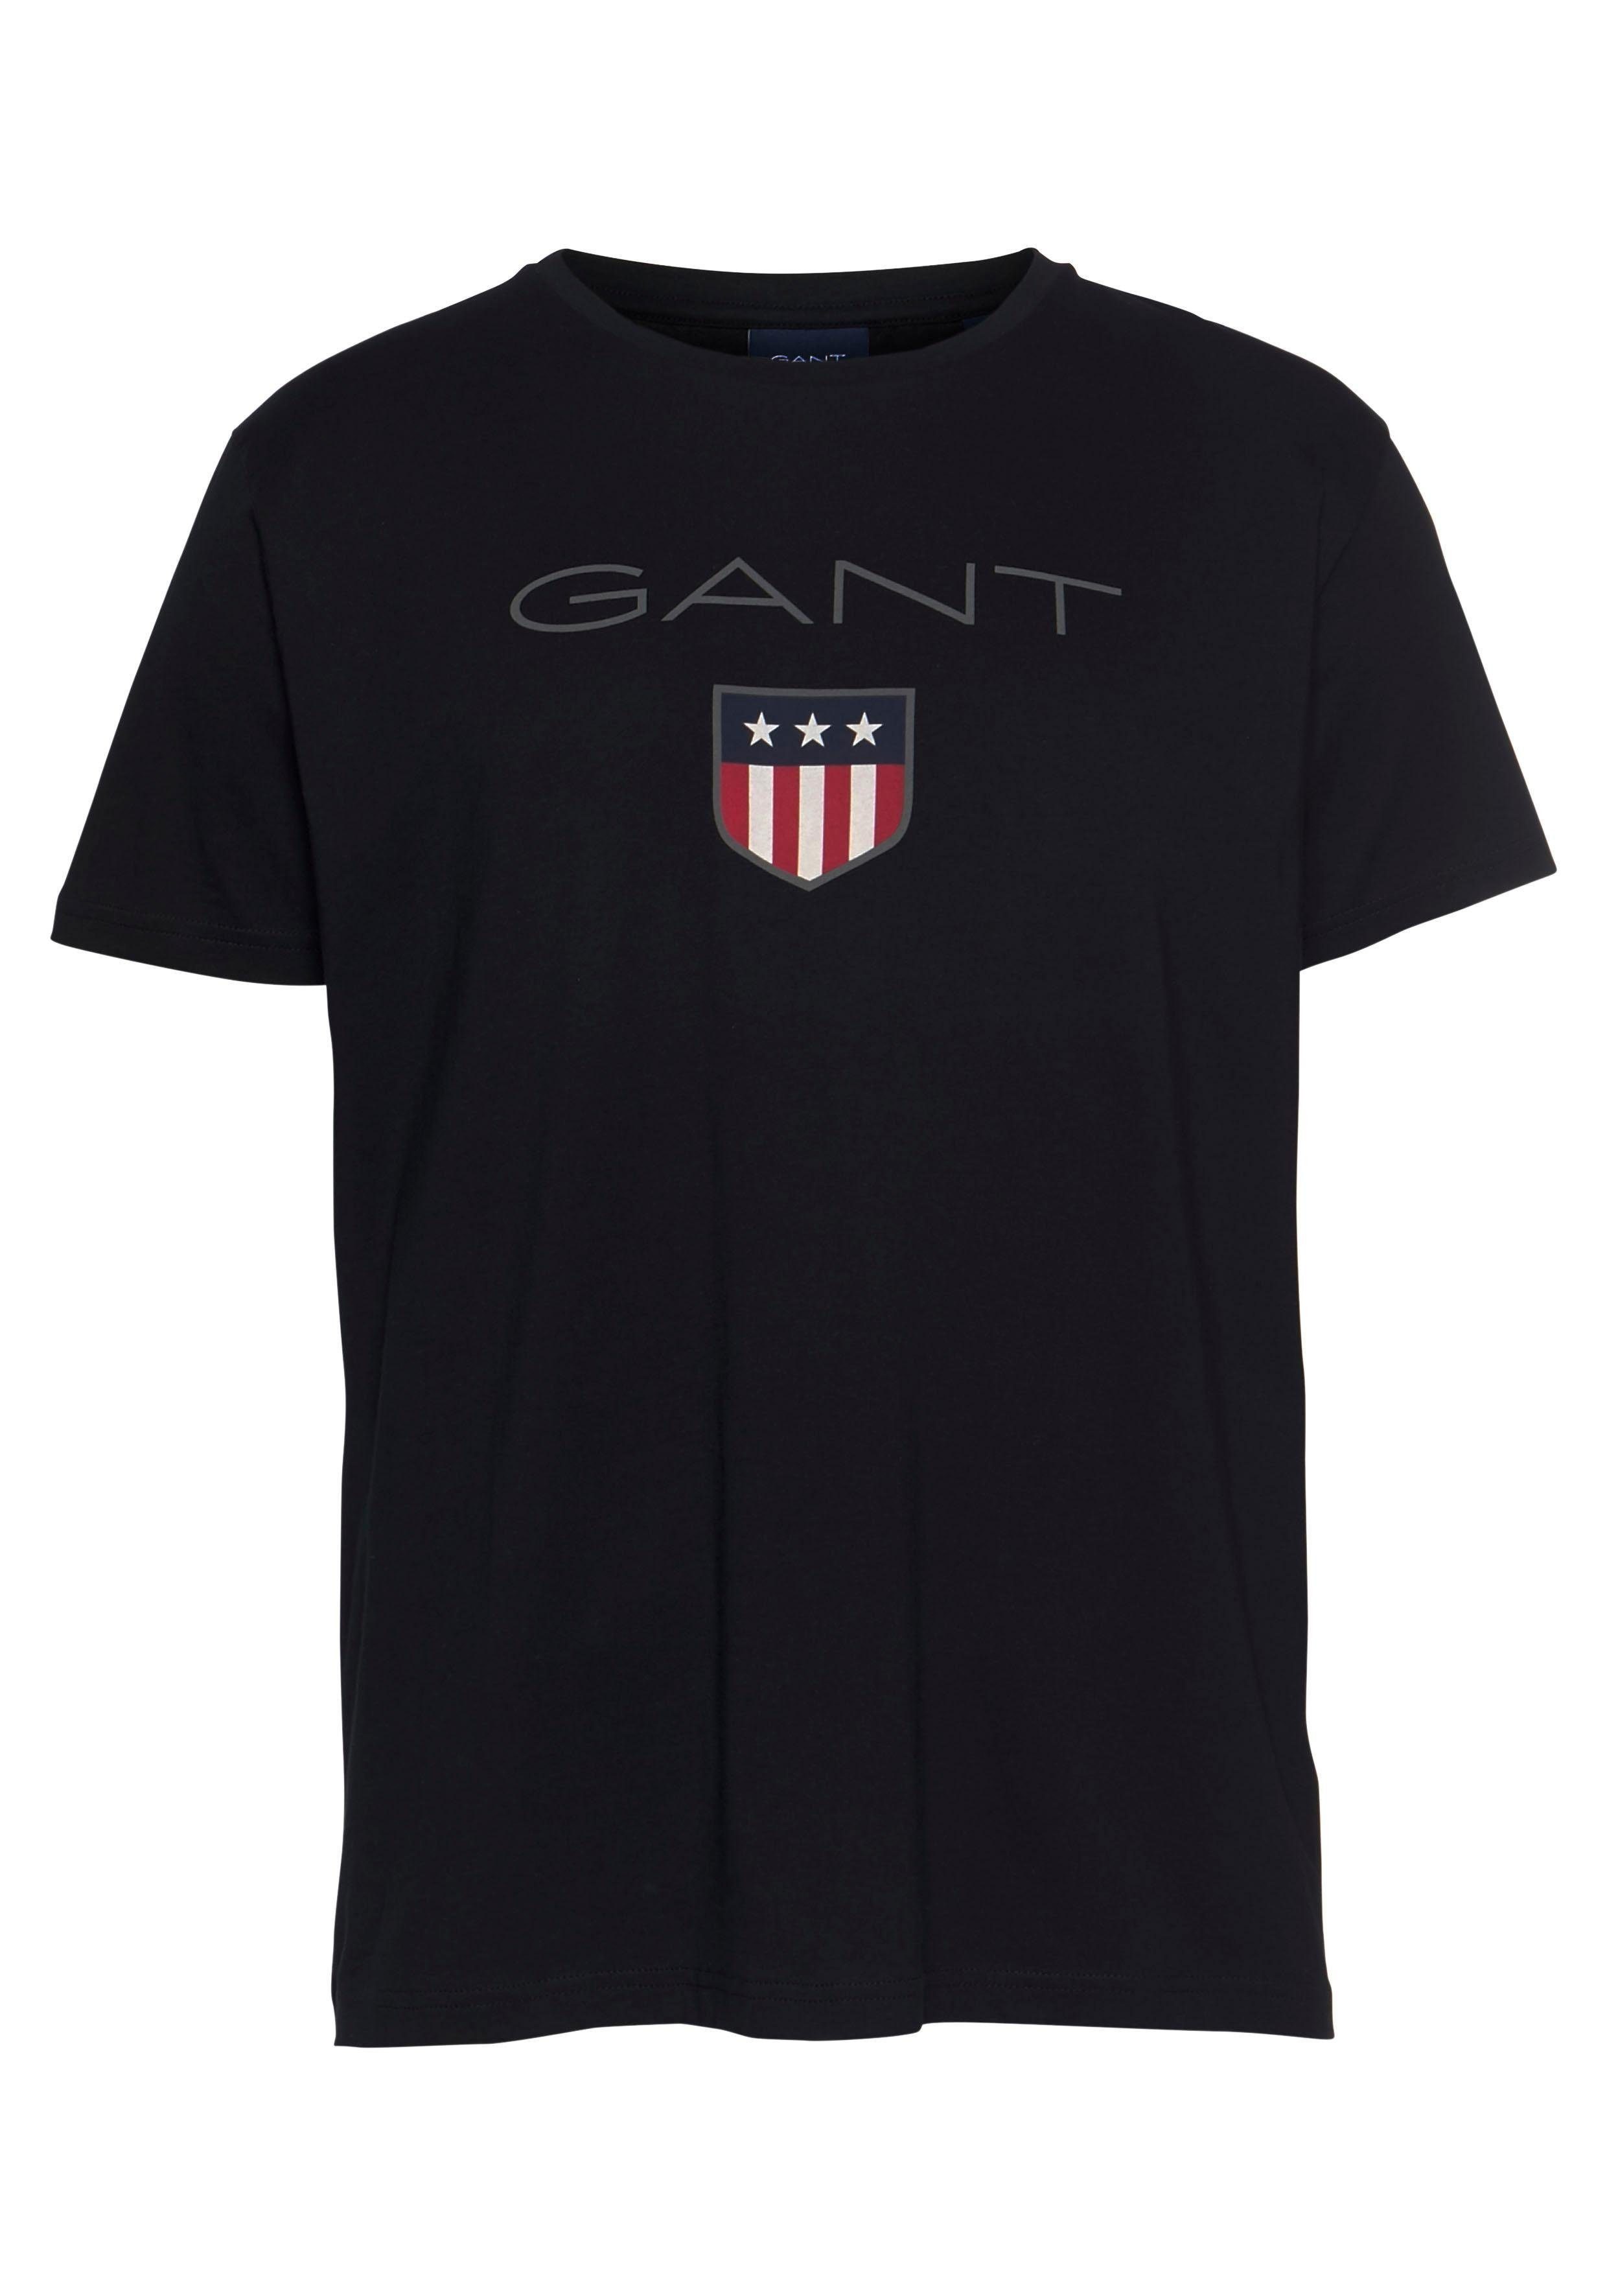 T-Shirt SHIELD Markendruck Großer Gant black